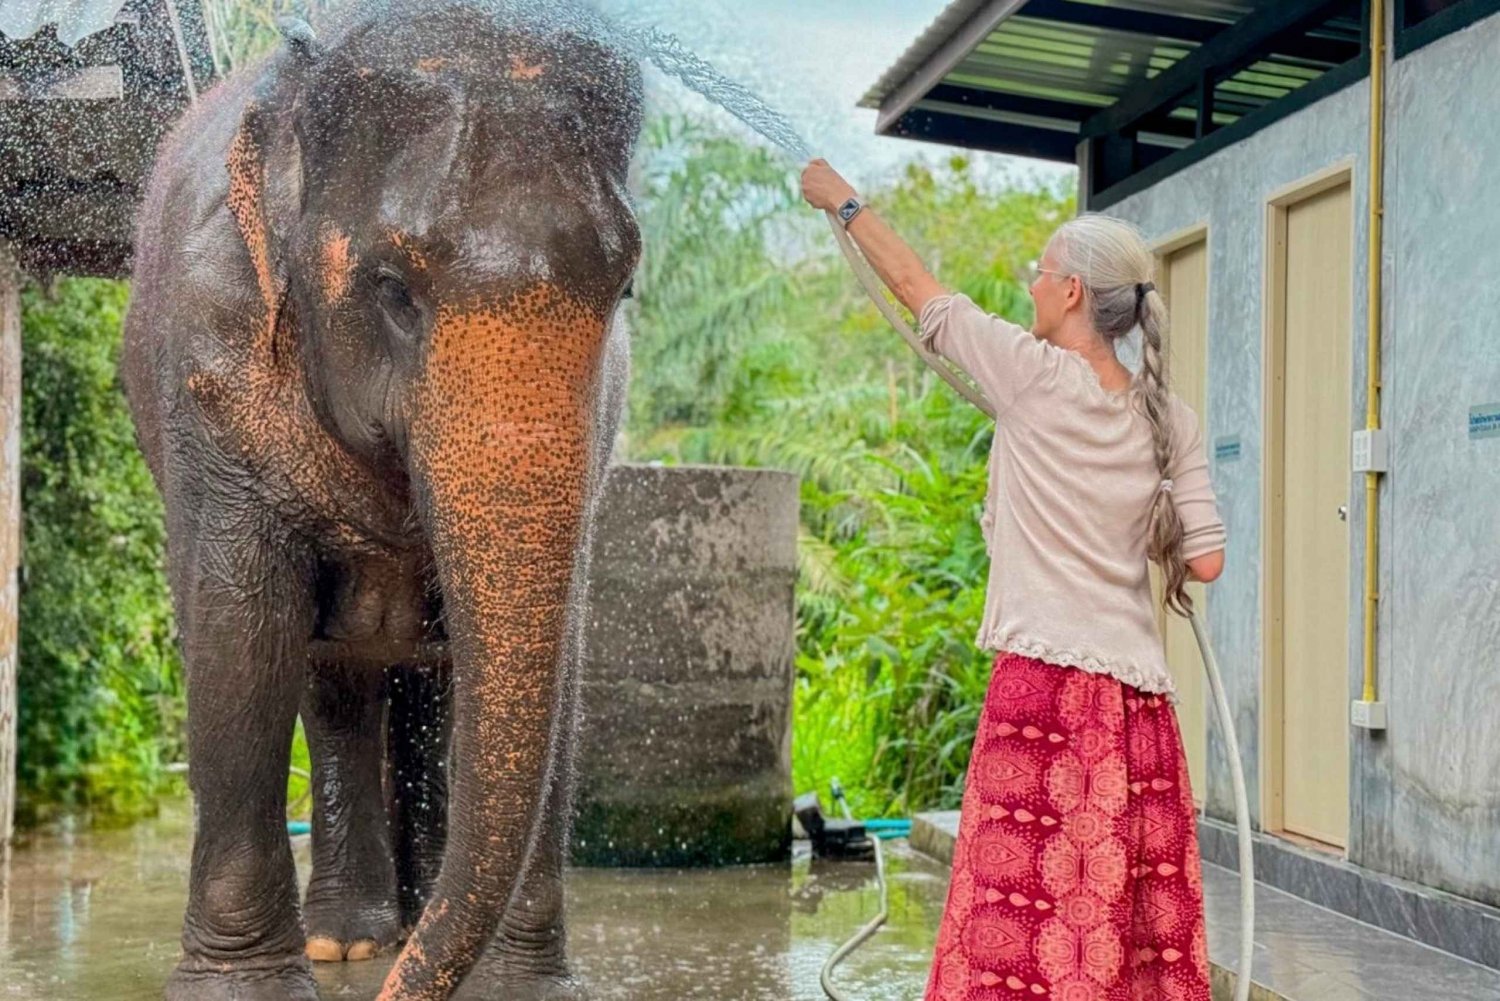 Koh Samui: Unik lokal tur og elefantreservat med frokost